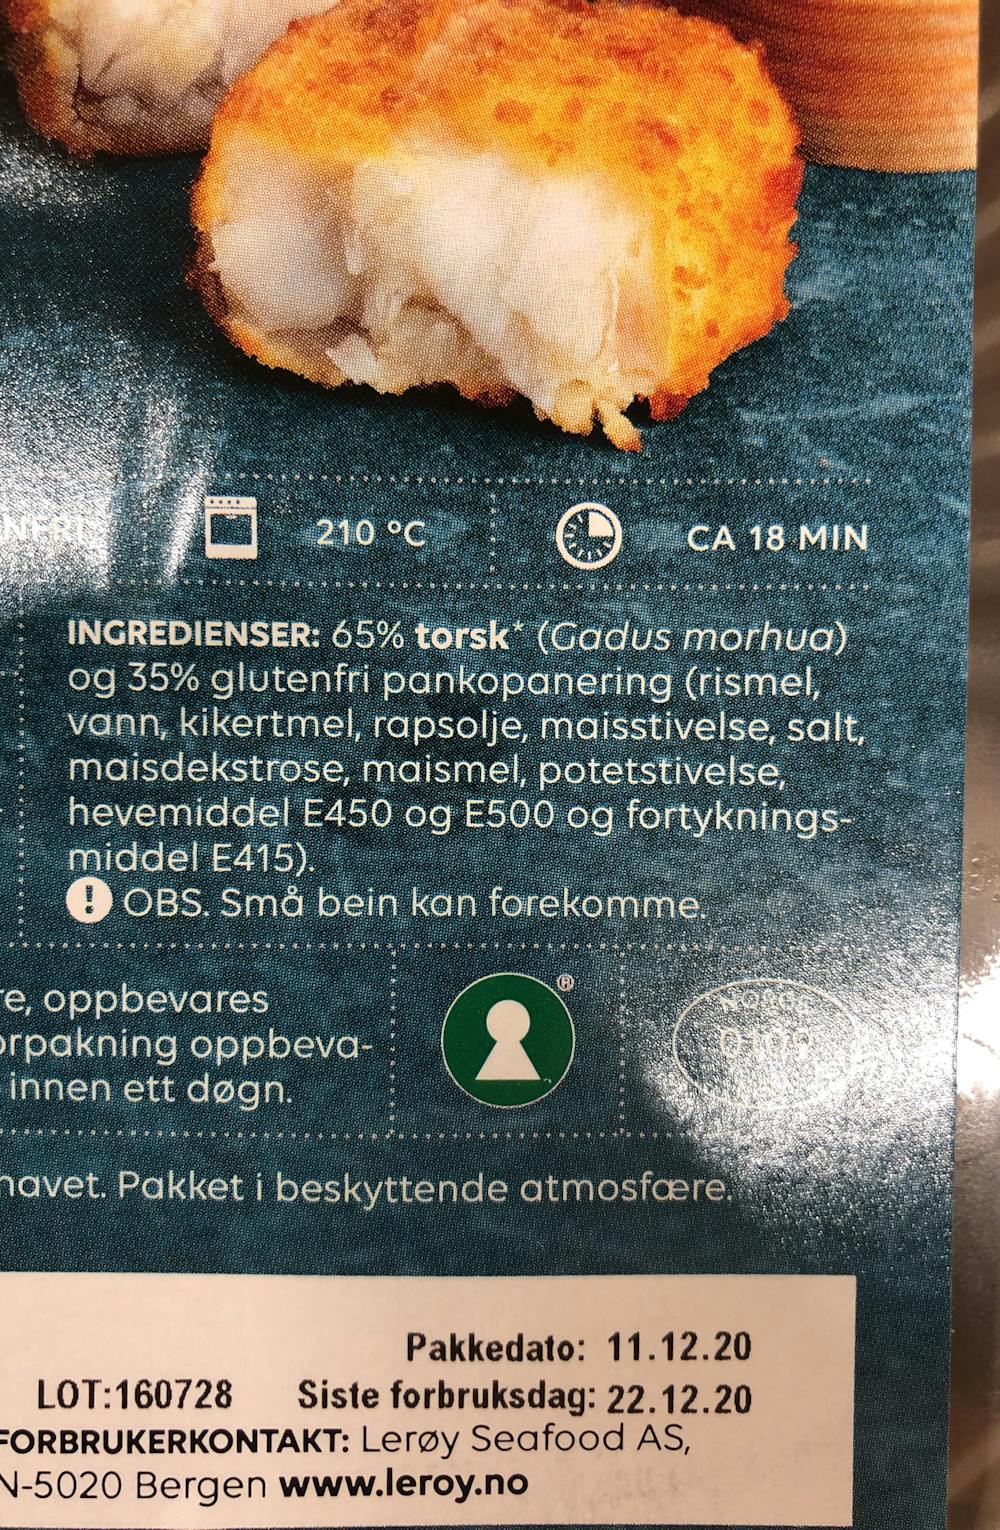 Ingredienslisten til Nuggets av torsk, Lerøy